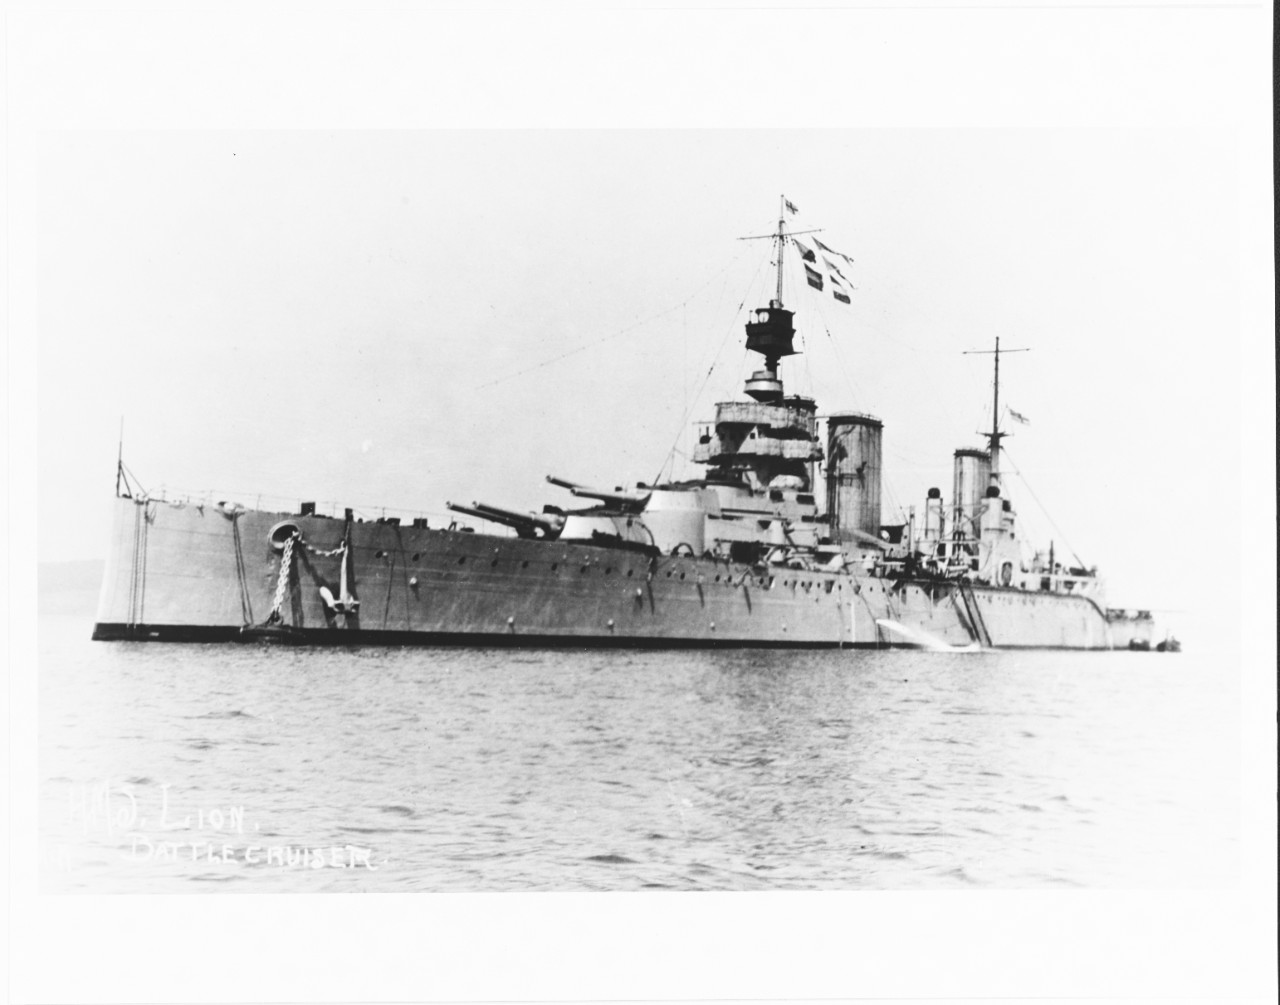 HMS LION (British Battle cruiser, 1910).